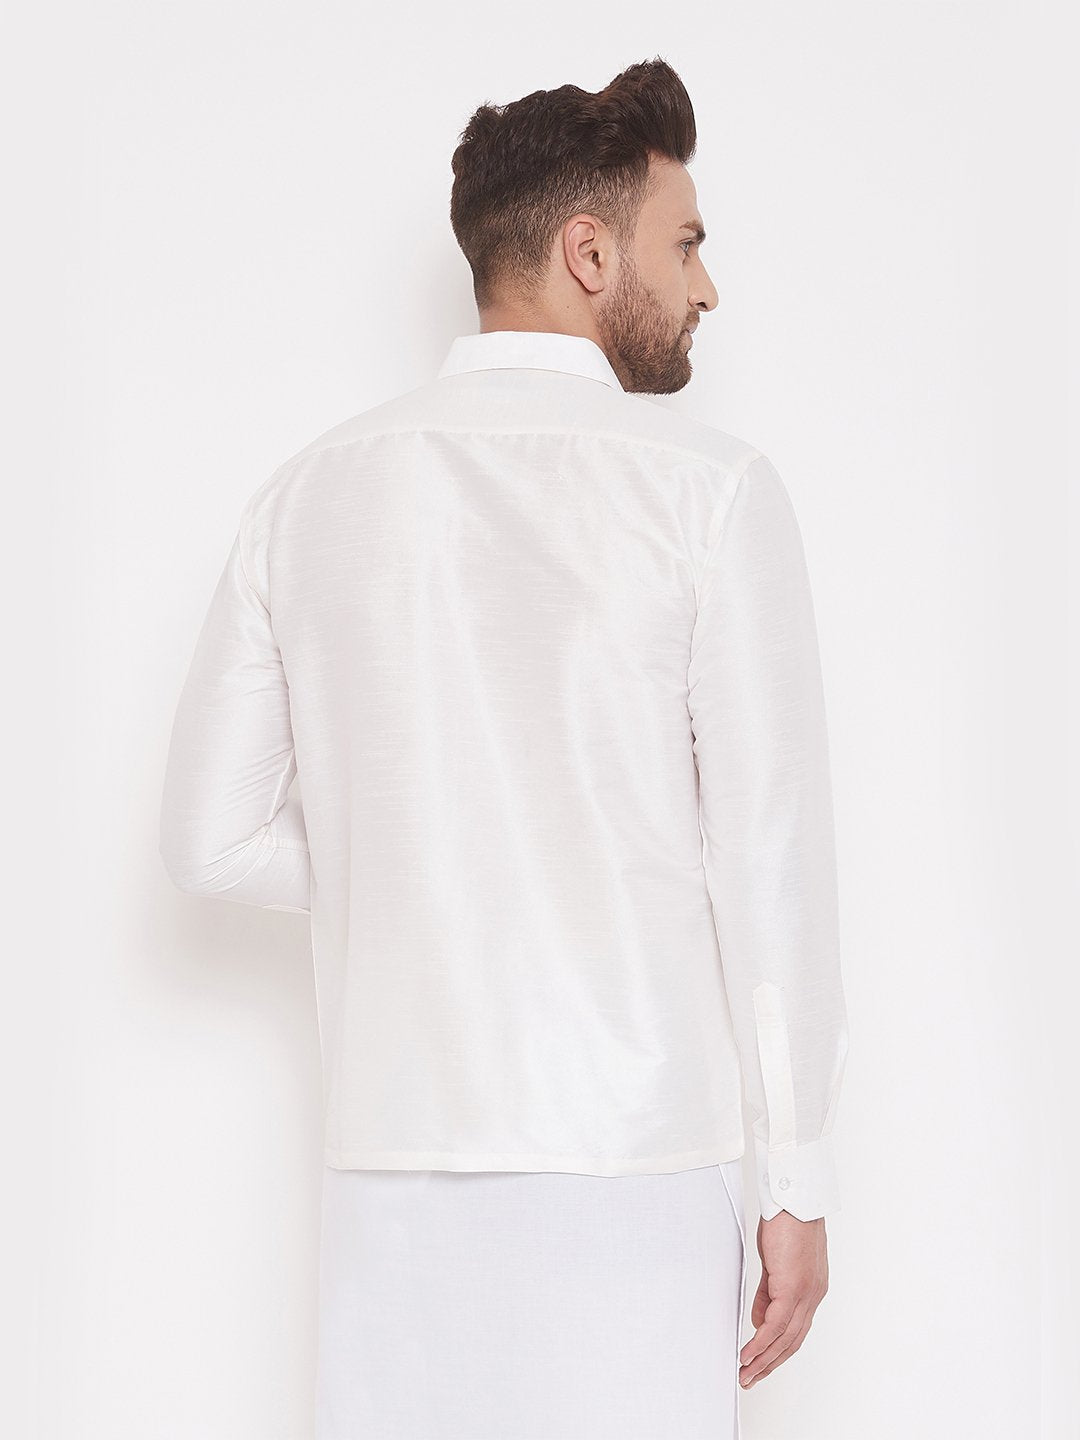 Men's White Cotton Silk Blend Ethnic Shirt - Vastramay